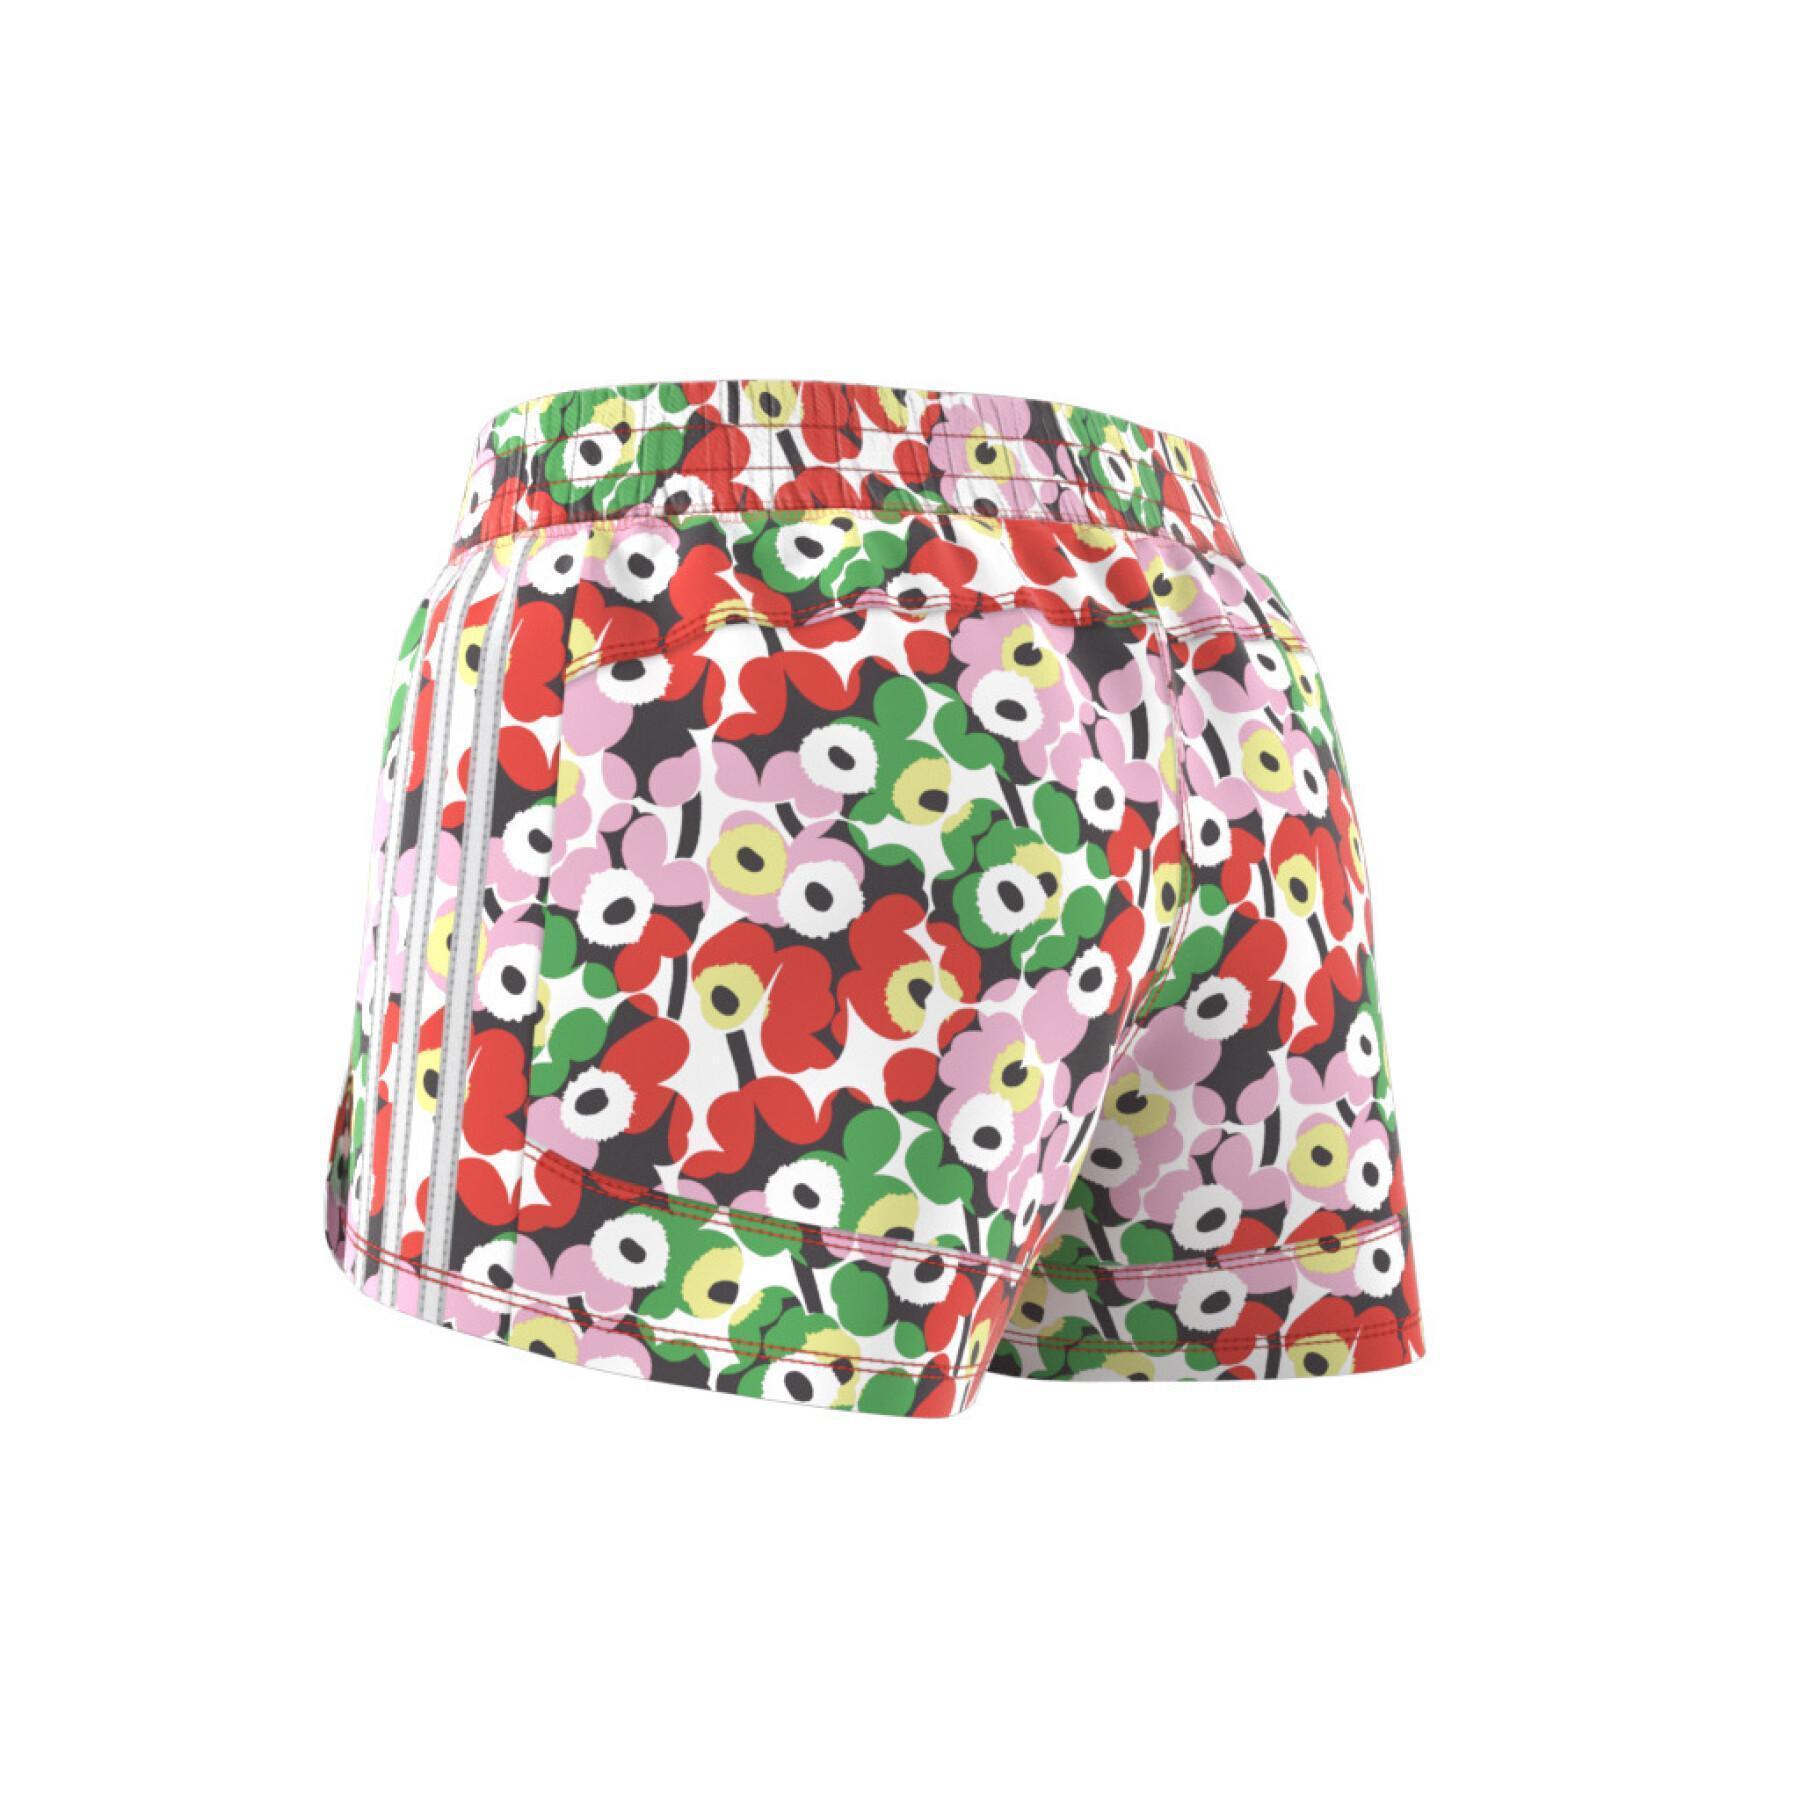 Women's shorts adidas x Marimekko Pacer - Shorts - Women's clothing ...